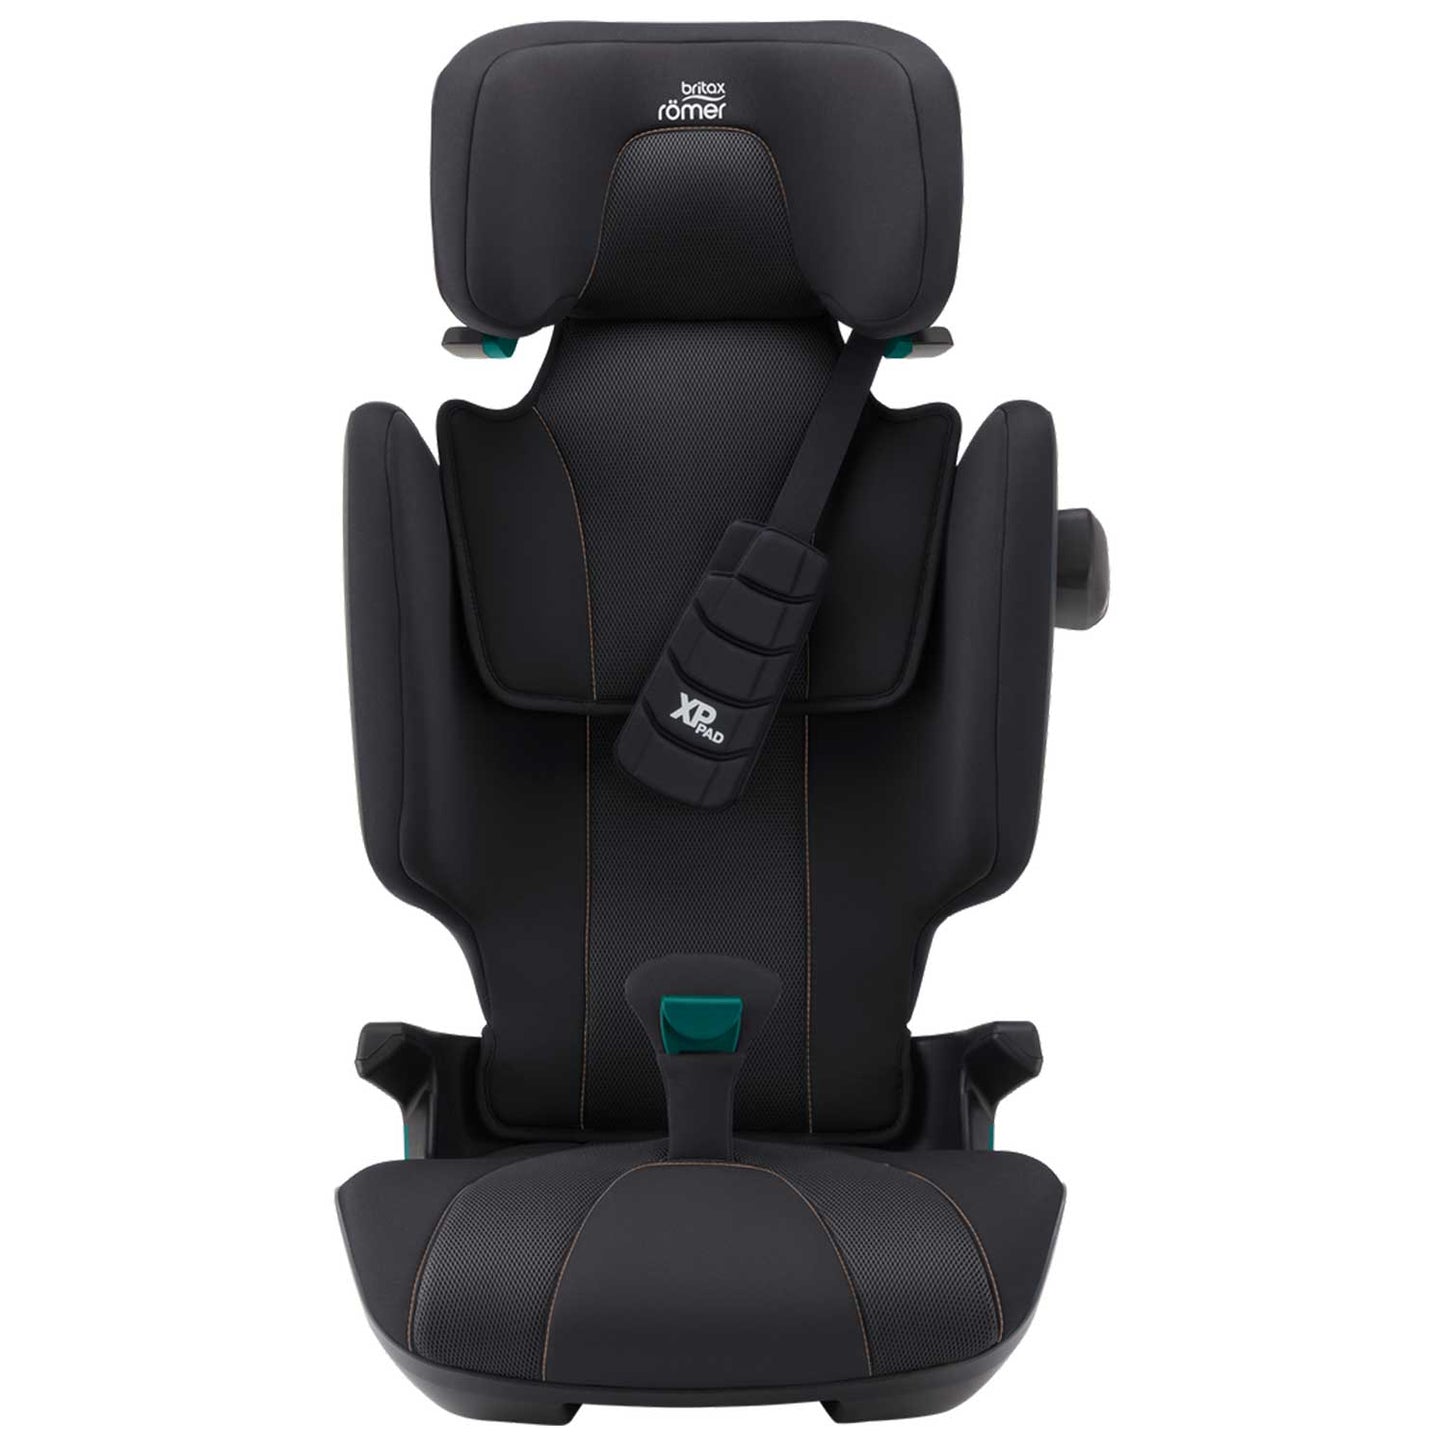 Britax - Diamond Kidfix i-size car seat